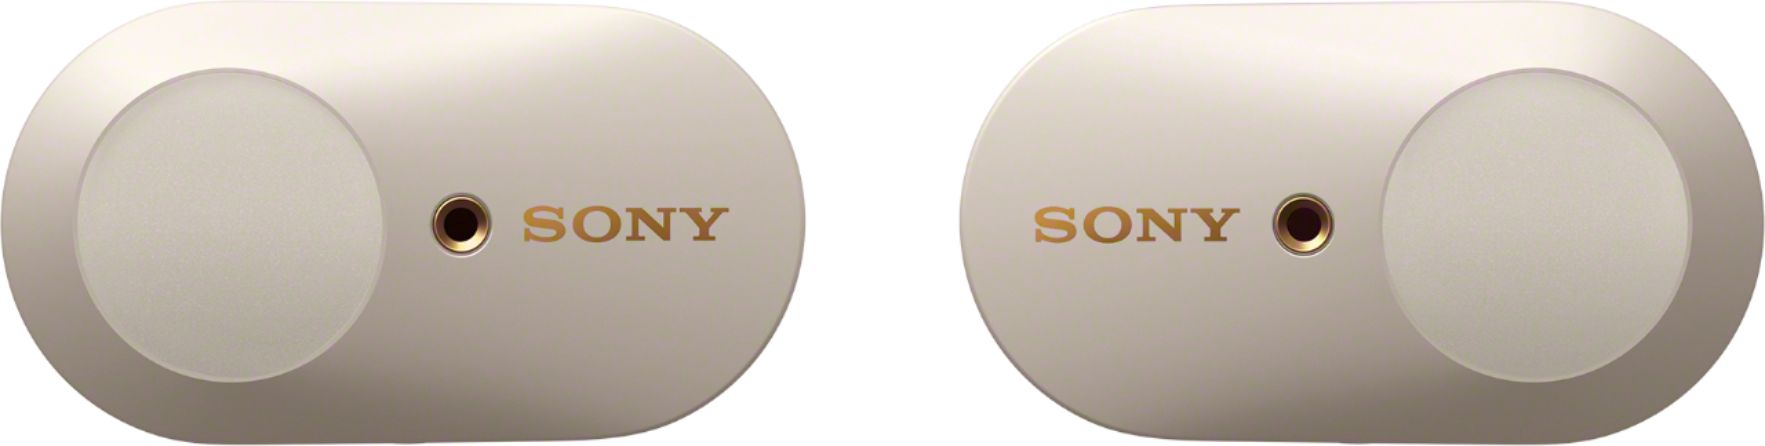 Sony WF-1000XM3 True Wireless Noise Cancelling In-Ear Headphones Silver  WF1000XM3/S - Best Buy